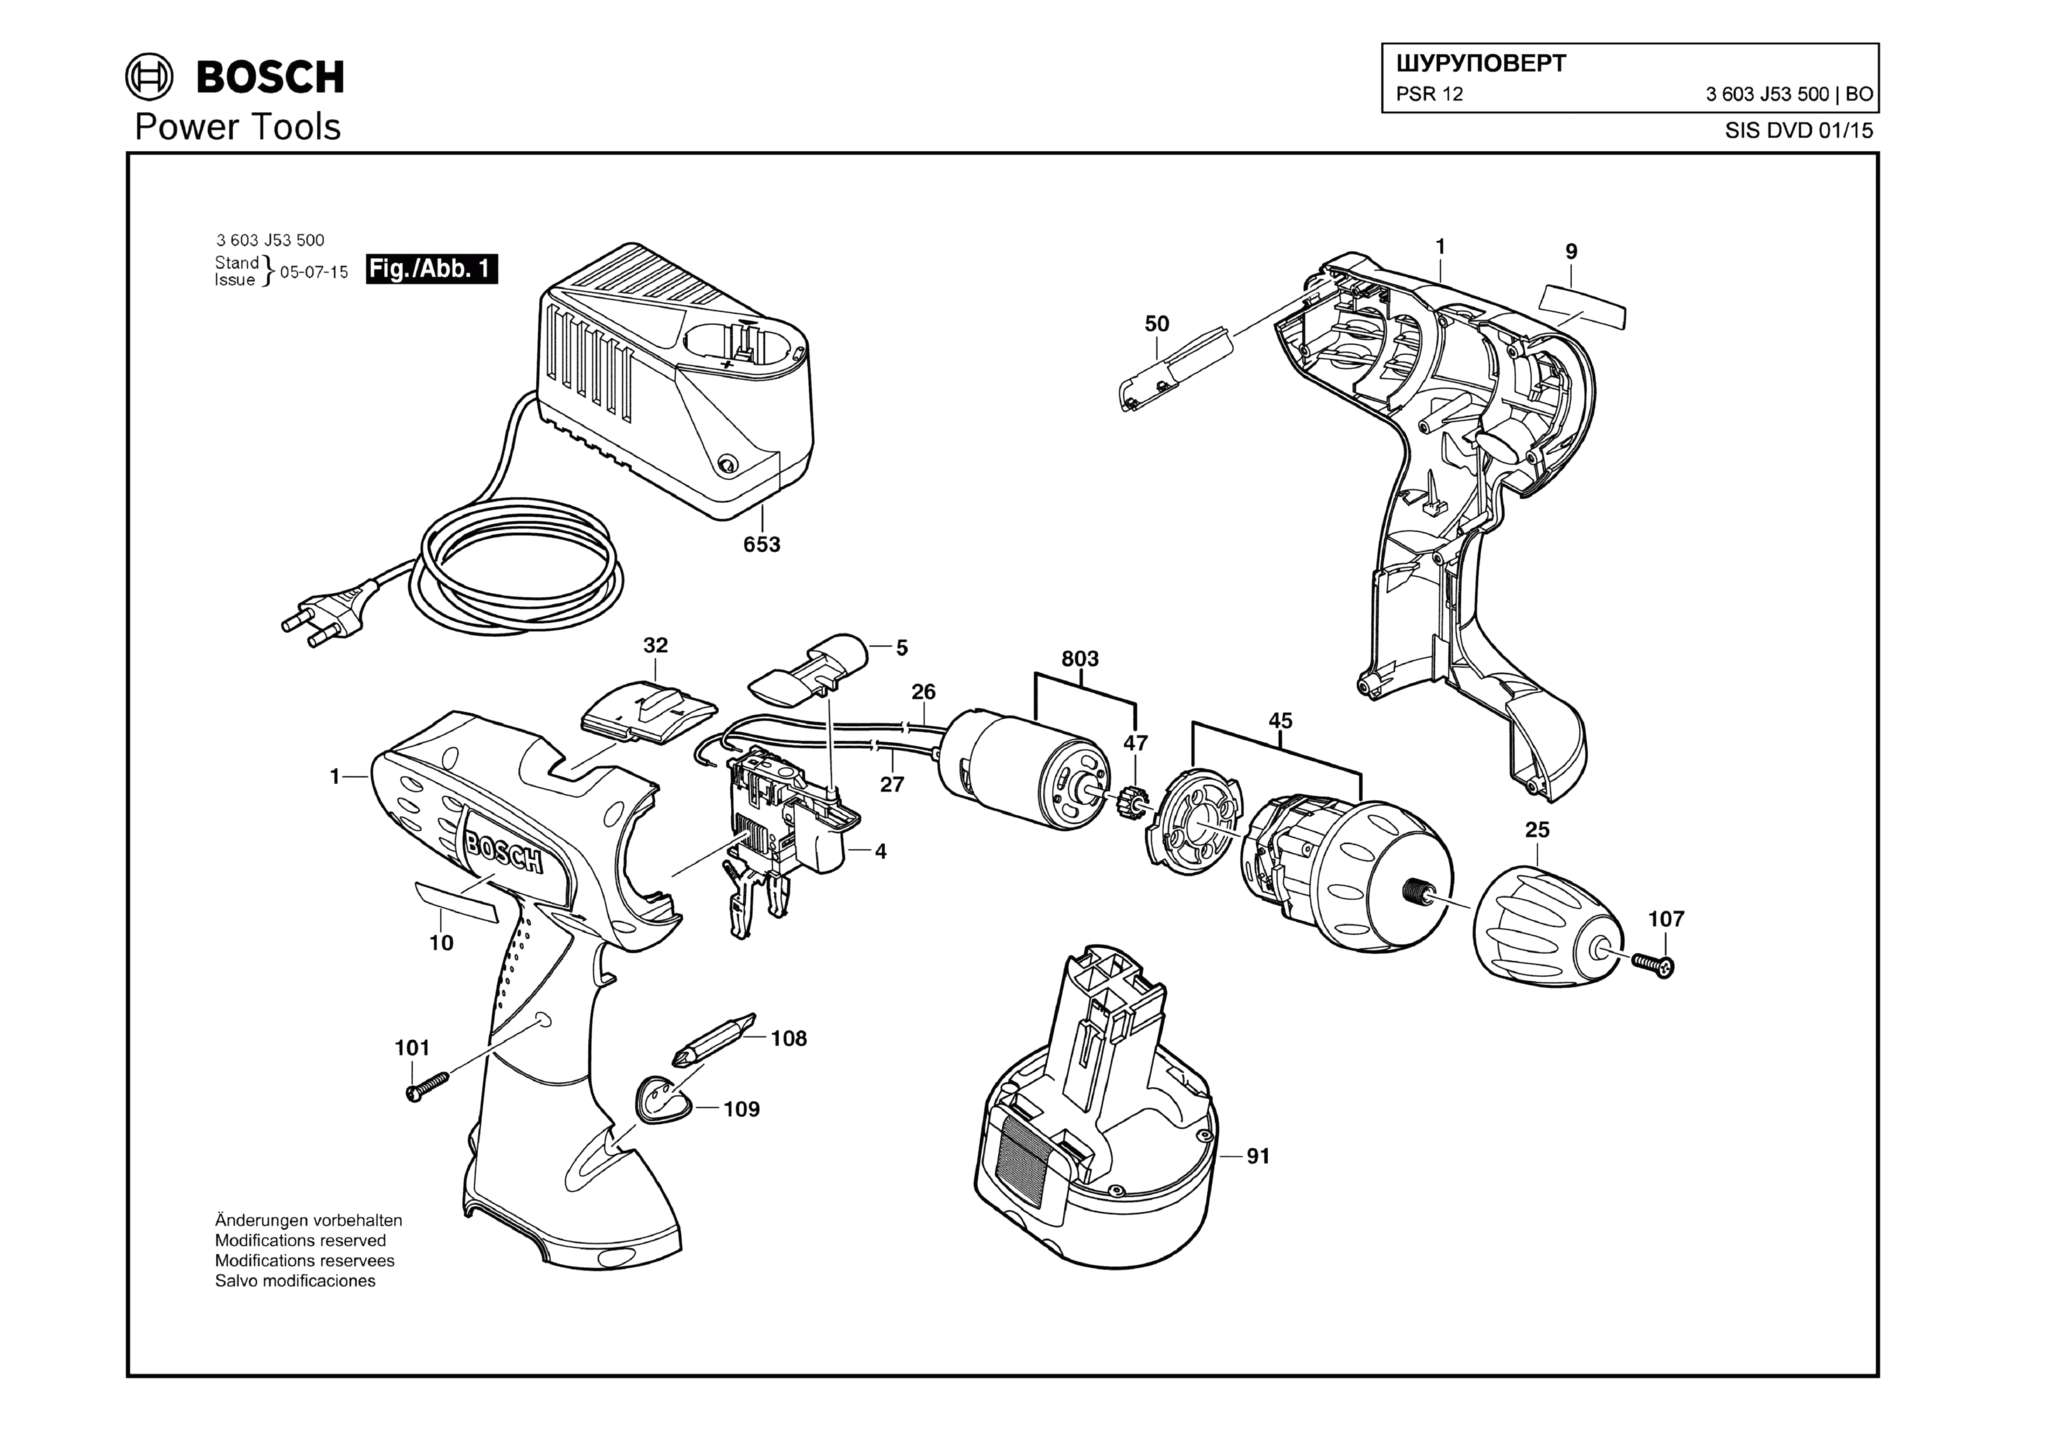 Запчасти, схема и деталировка Bosch PSR 12 (ТИП 3603J53500)